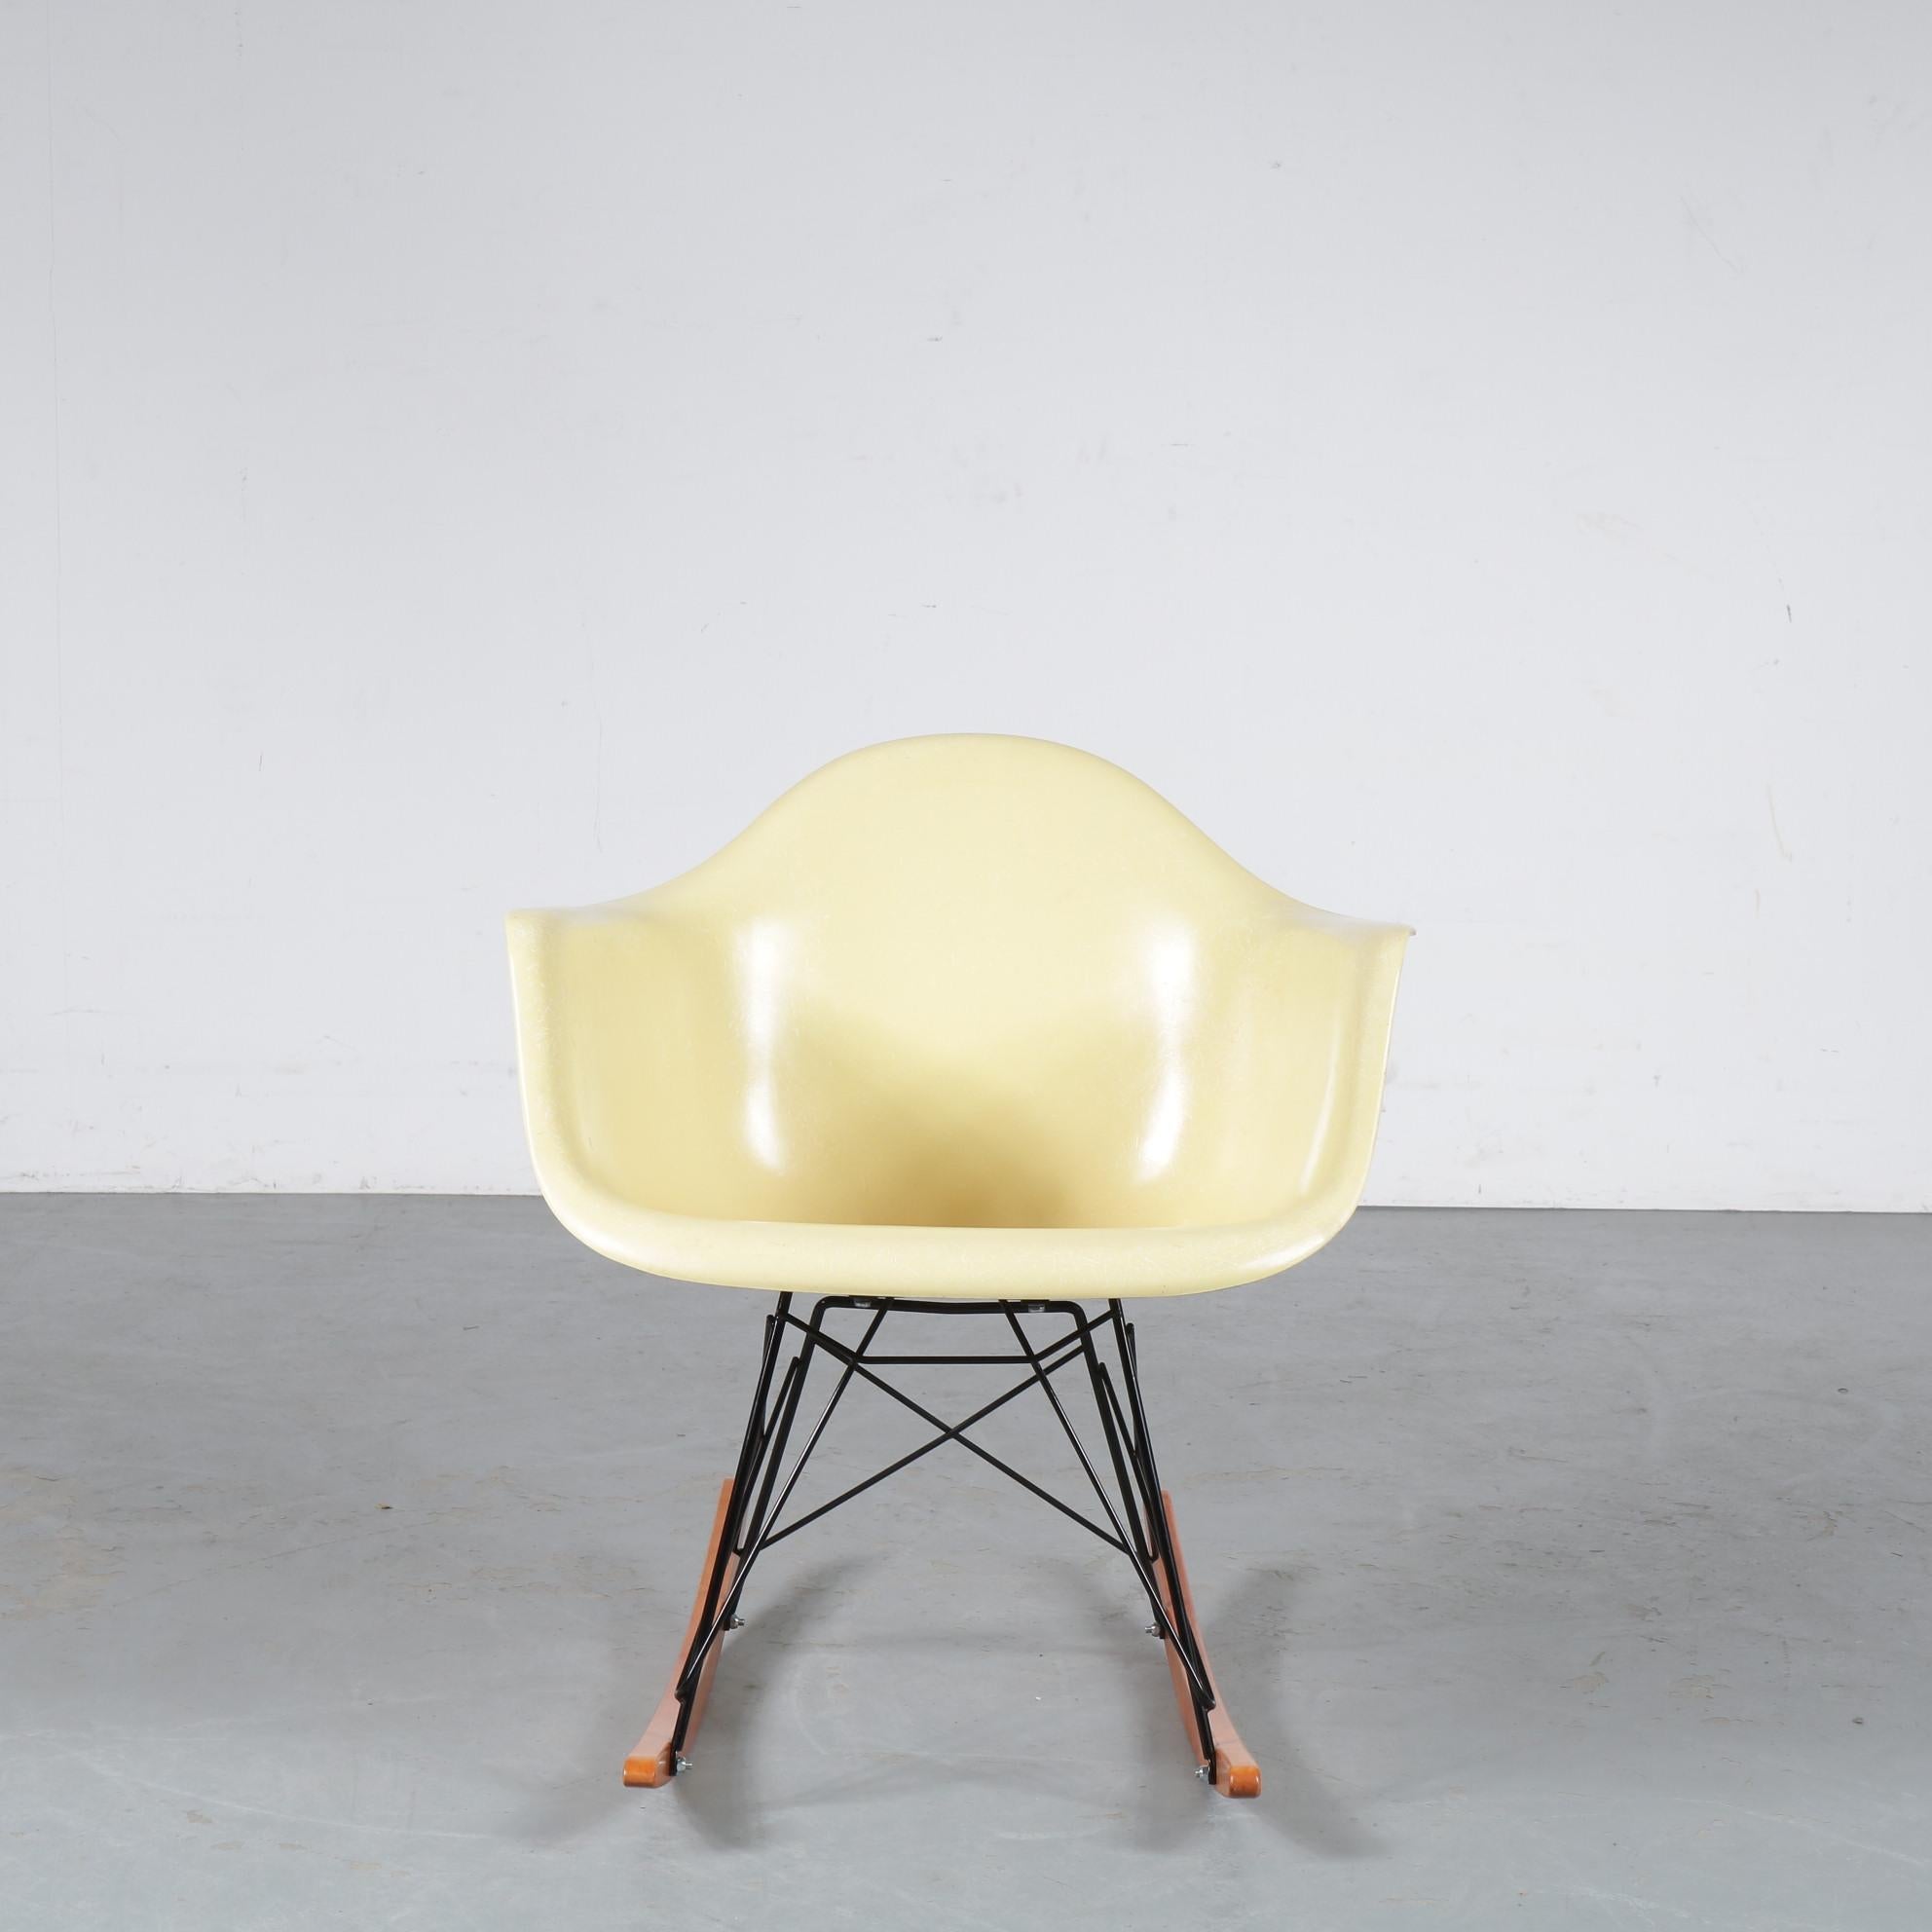 Un très rare fauteuil à bascule conçu par Charles & Ray Eames, fabriqué par Zenith / Herman Miller aux États-Unis d'Amérique vers 1950.

Les premières chaises Eames en fibre de verre ont été produites par Zenith Plastics et étaient disponibles